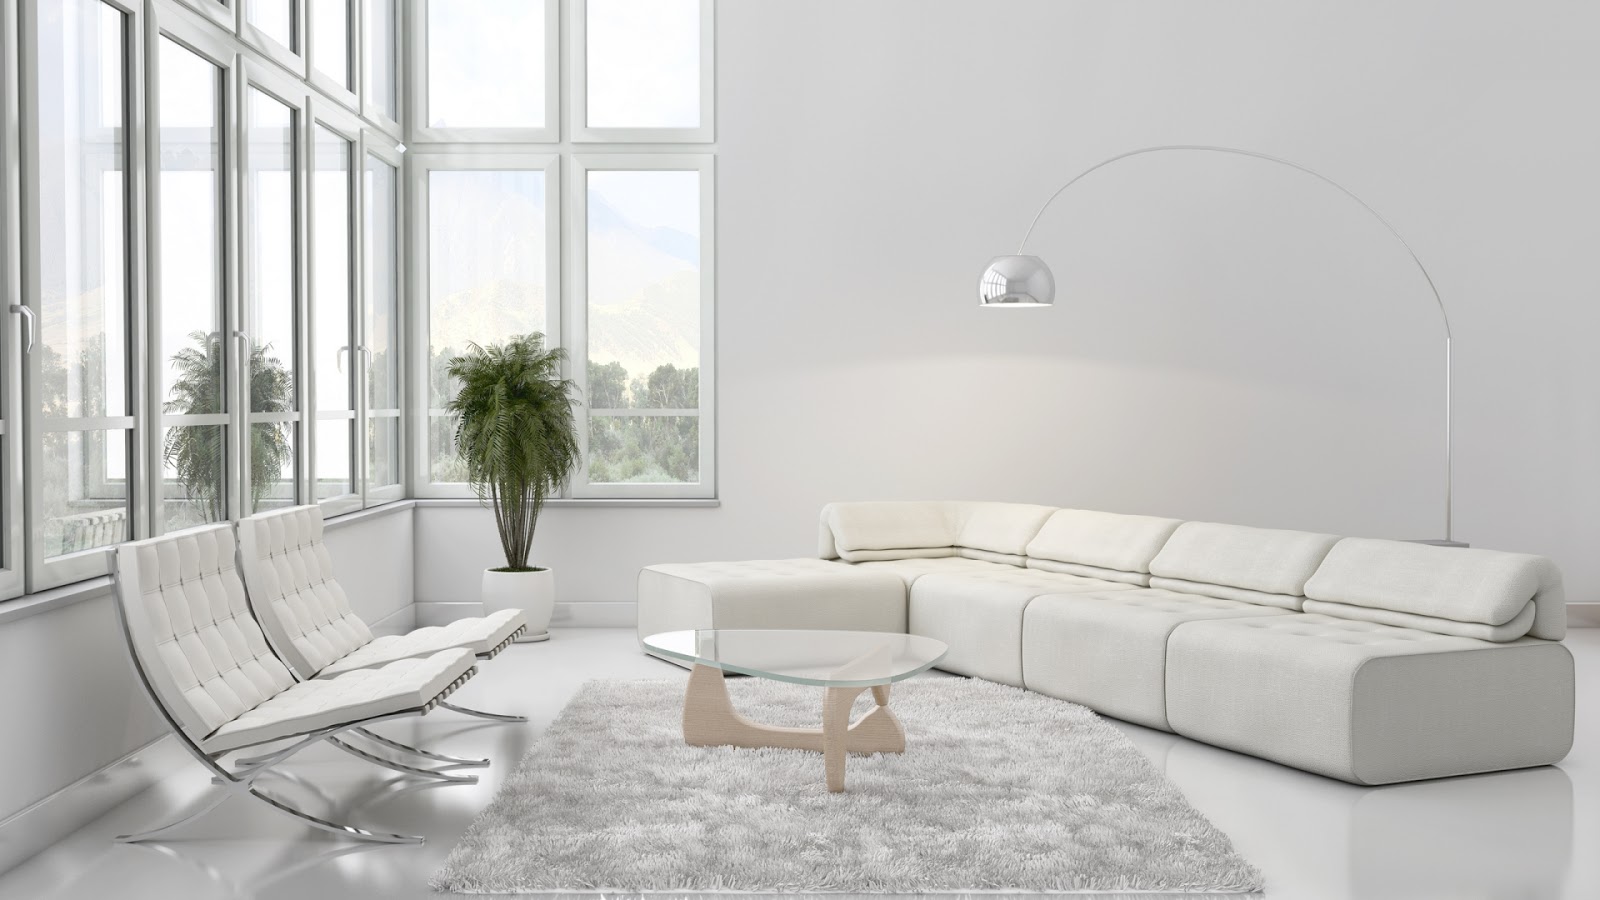 استفاده از رنگ سفید در دکوراسیون، خانه‌تان را زیباتر میکند - کیلیدمگ | مجله تخصصی مسکن، ساختمان، معماری و سبک زندگی